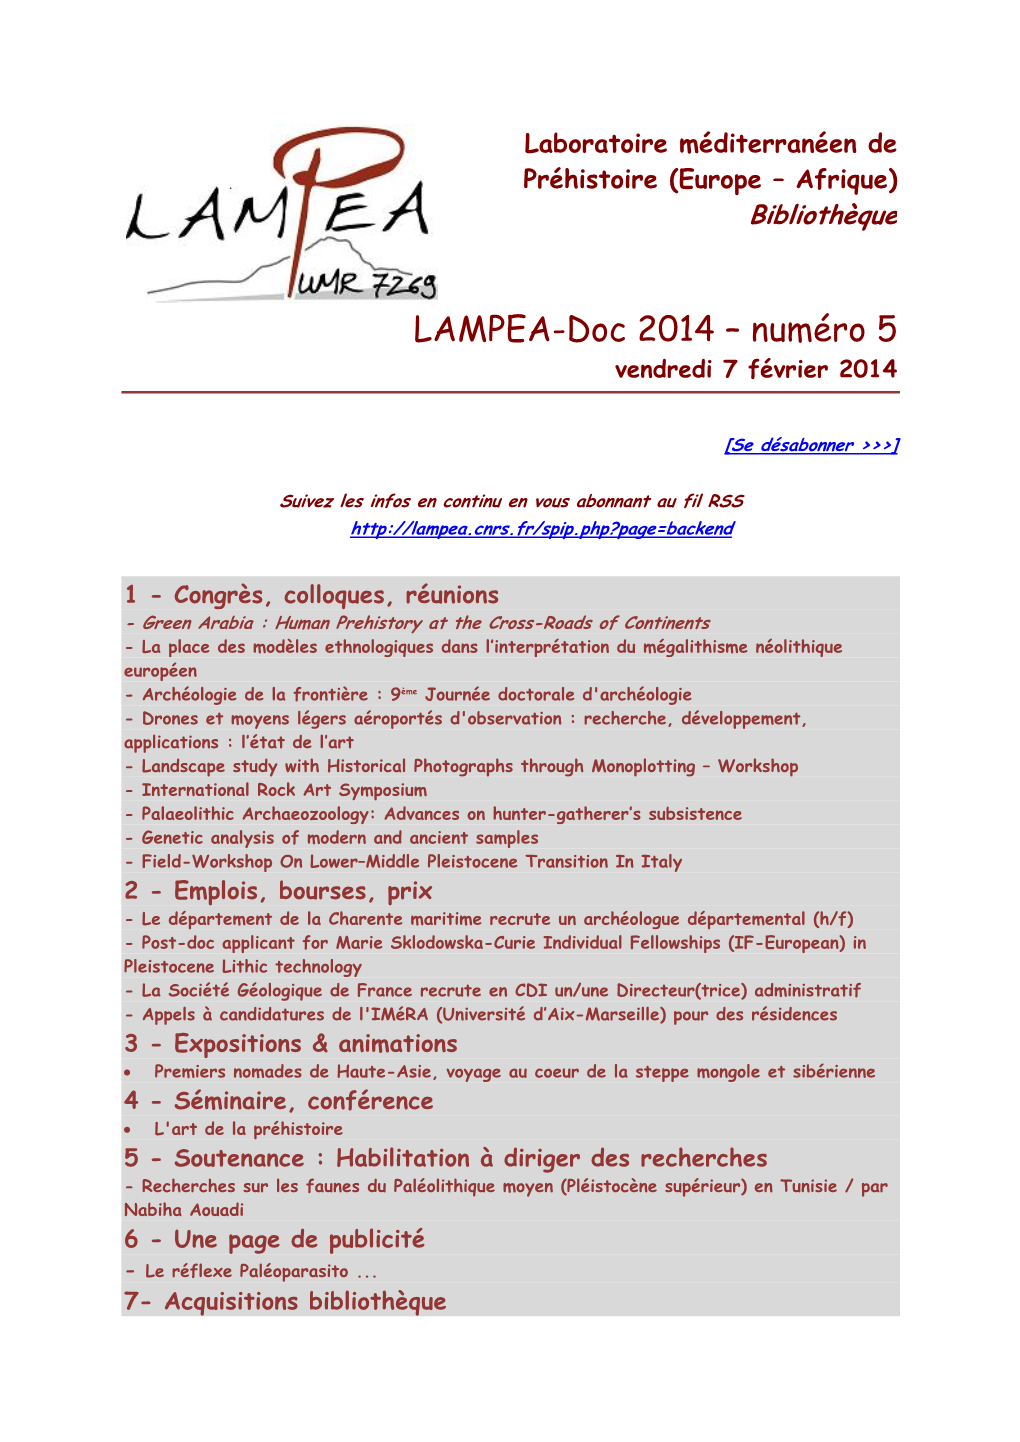 LAMPEA-Doc 2014 – Numéro 5 Vendredi 7 Février 2014